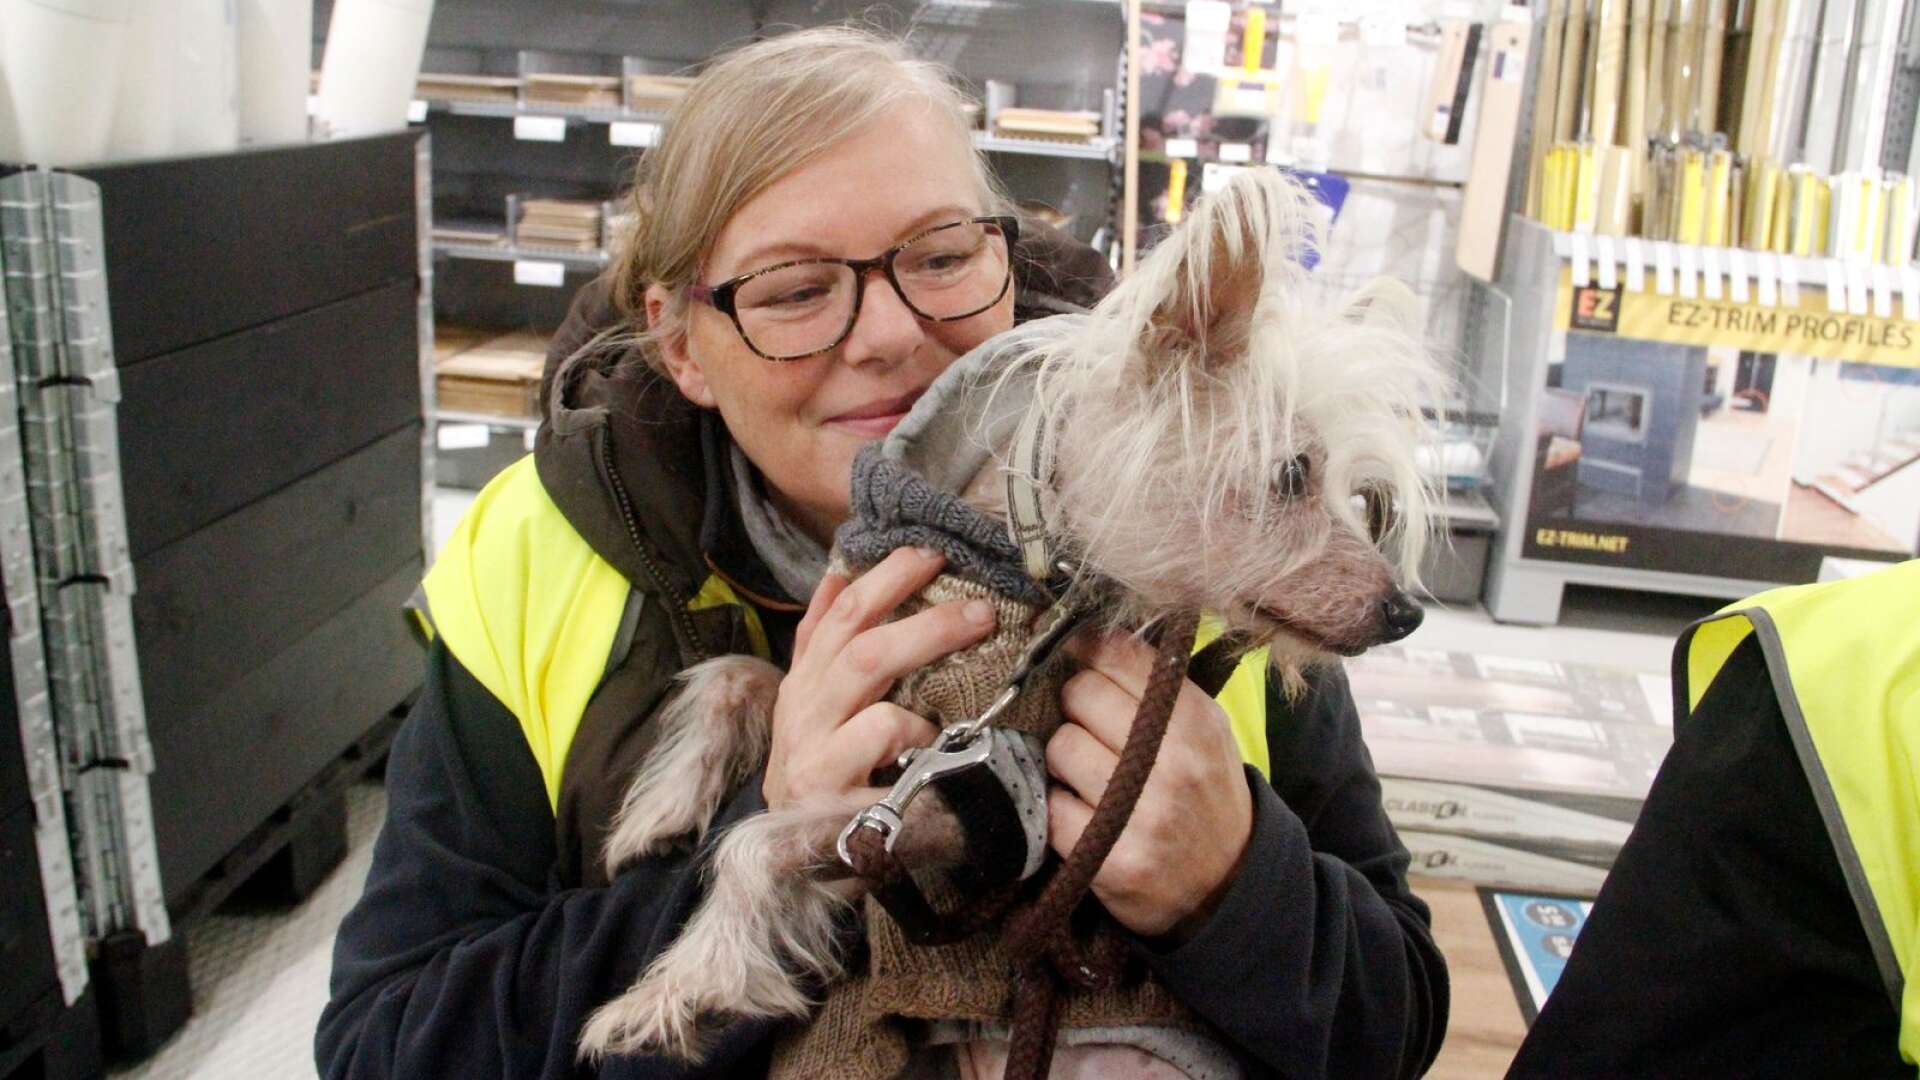 Vivi-Annette Övergaard från Dals Långed är nu lyckligt återförenad med sin nakenhund Mumre som varit bortsprungen i fem dygn i vinterkylan. 